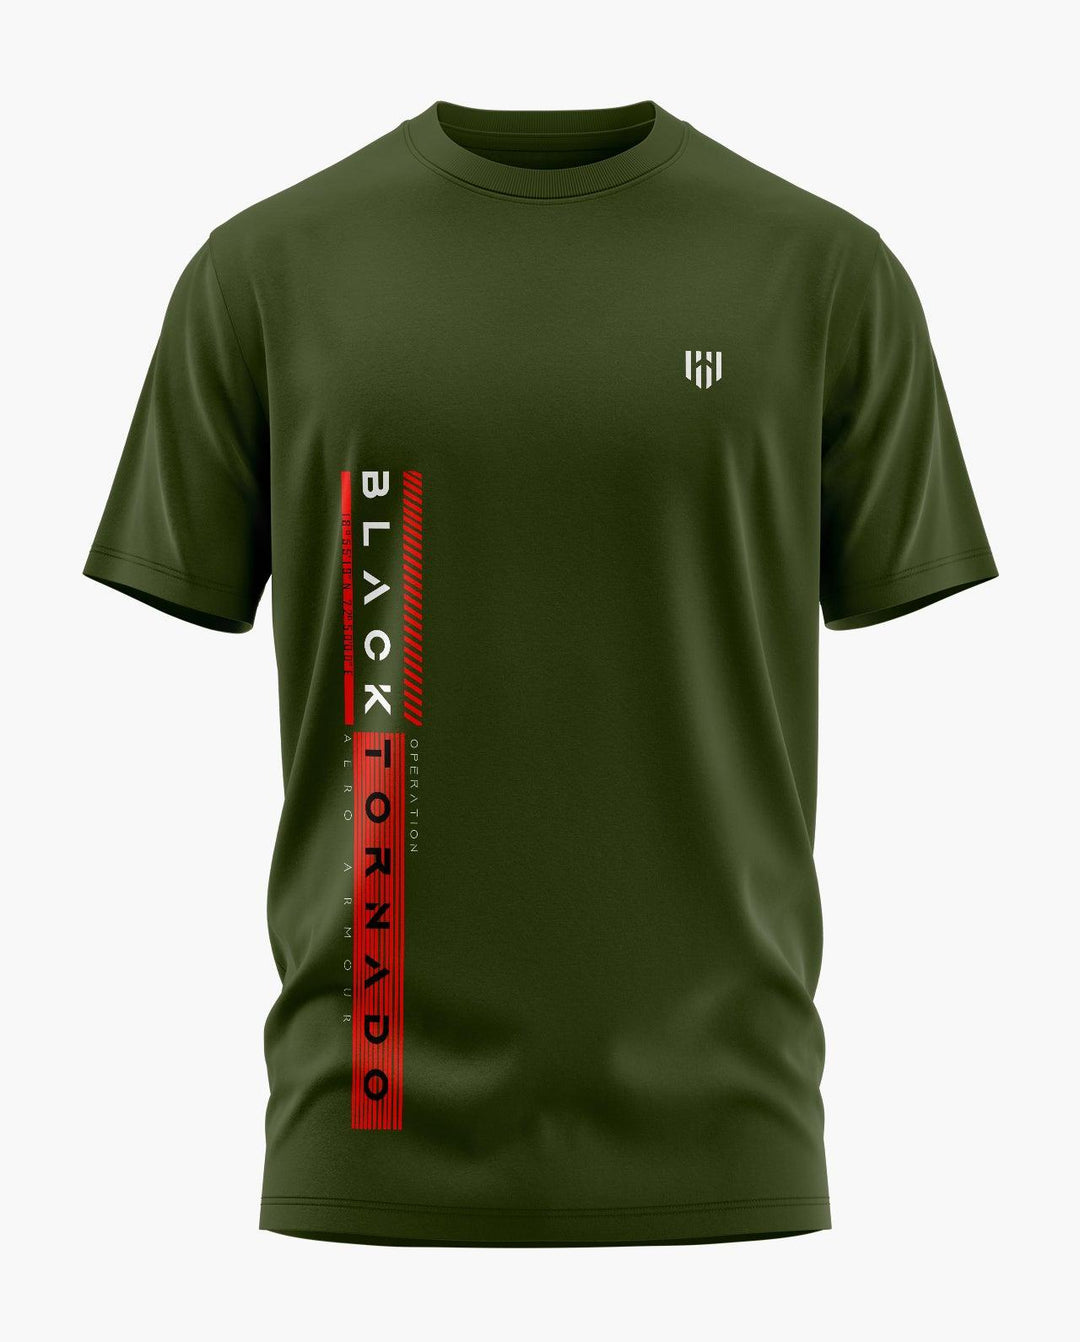 Black Tornado Typo T-Shirt - Aero Armour